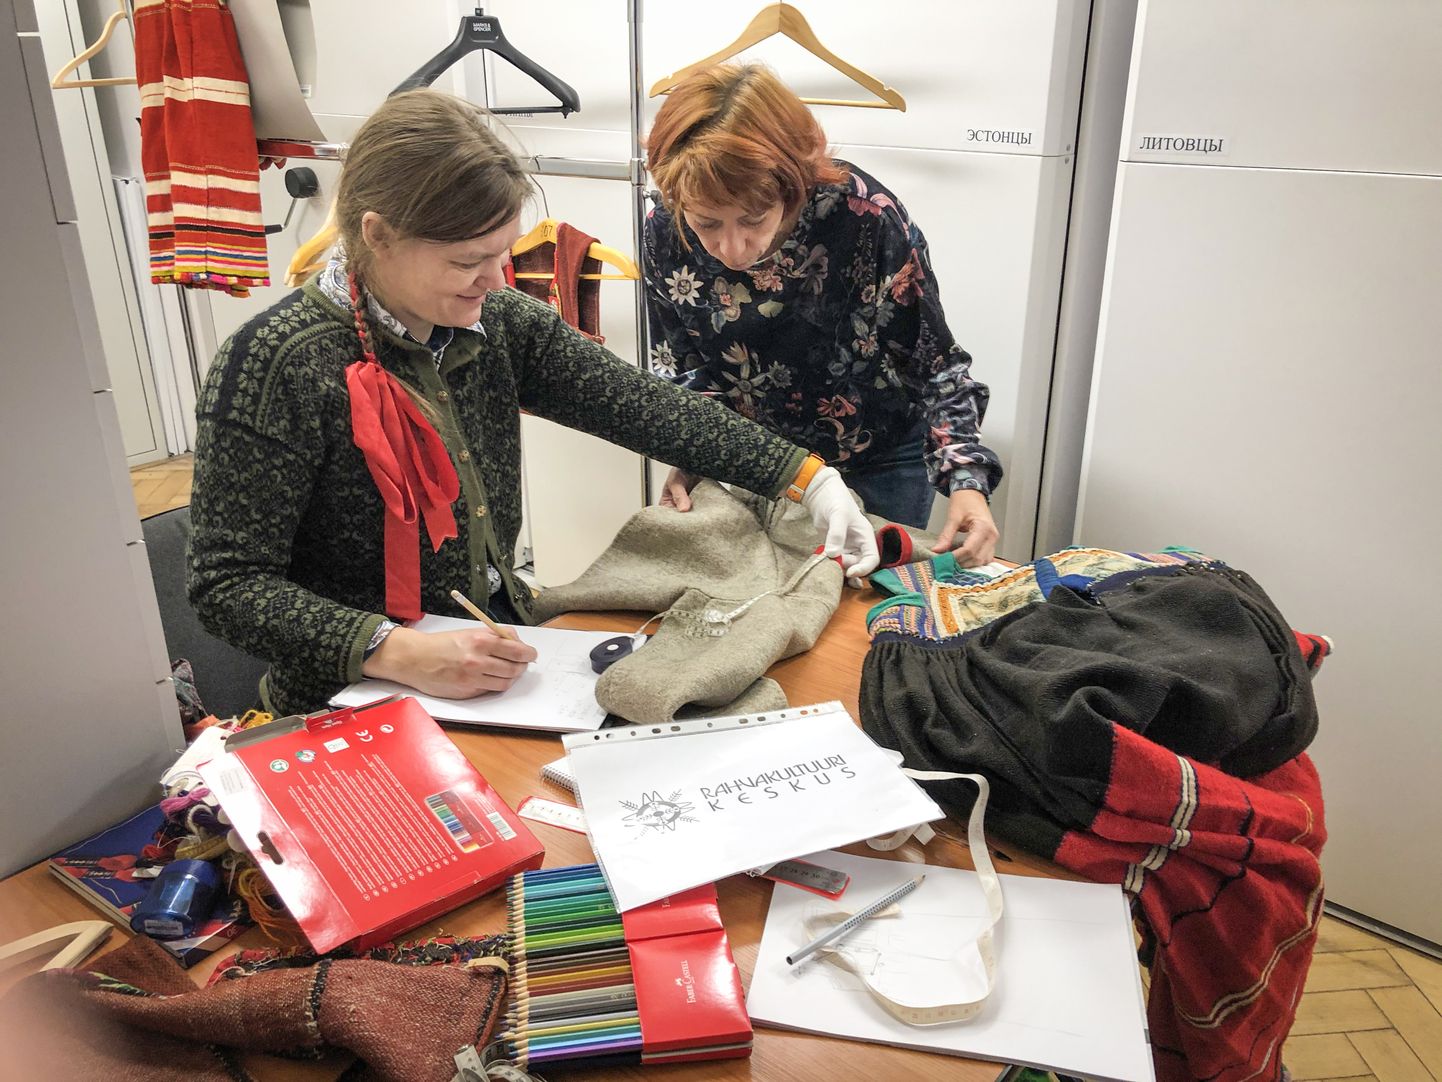 KÕIK KIRJA: Mari Lepik (vasakul) ja Mareli Rannap uurisid ja kirjeldasid muuseumis sadu rõivaesemeid.